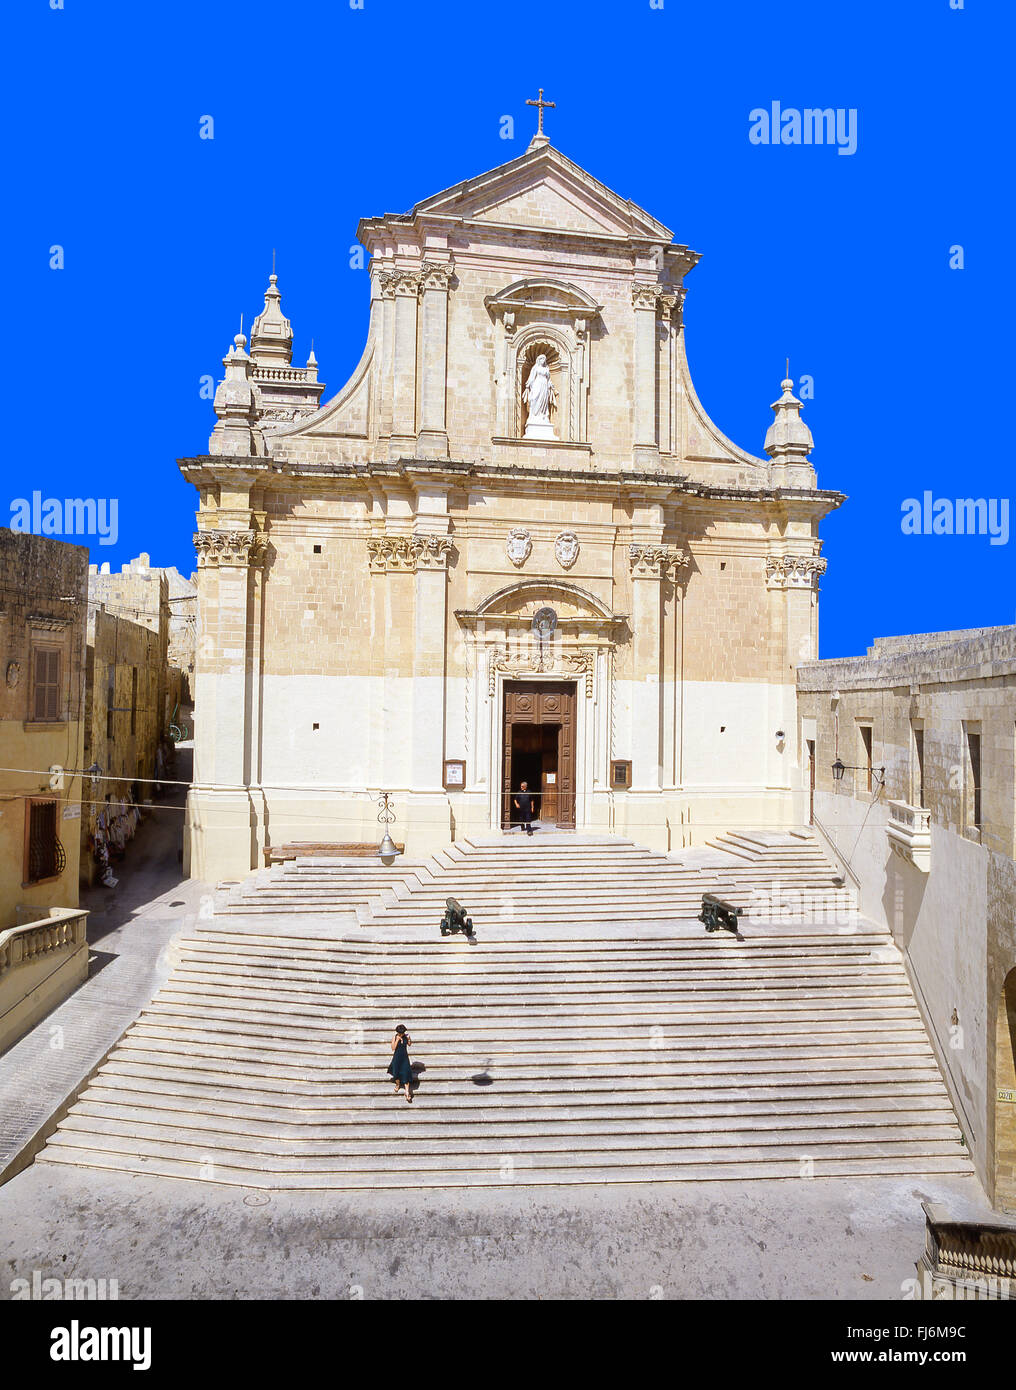 La Cathédrale de l'Assomption, La Citadelle, Città Victoria, Gozo Gozo (Għawdex), Région, République de Malte Banque D'Images